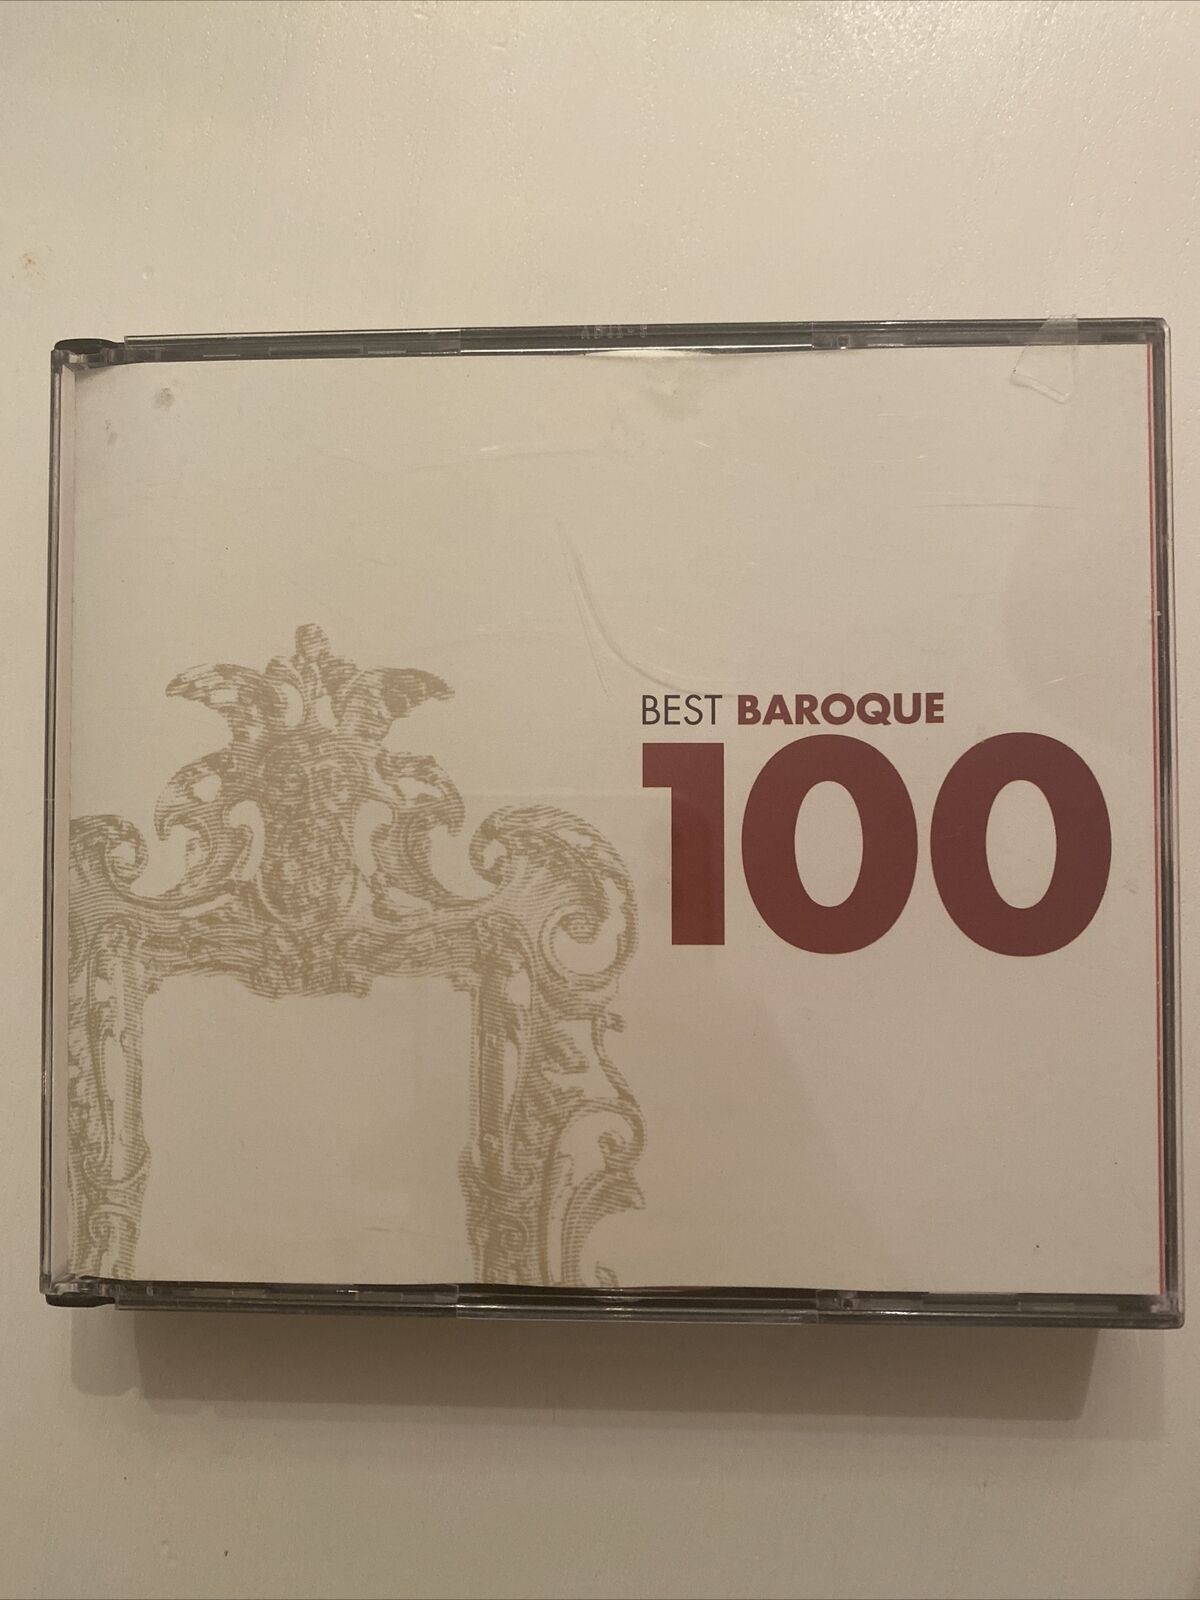 100 Best Baroque CD